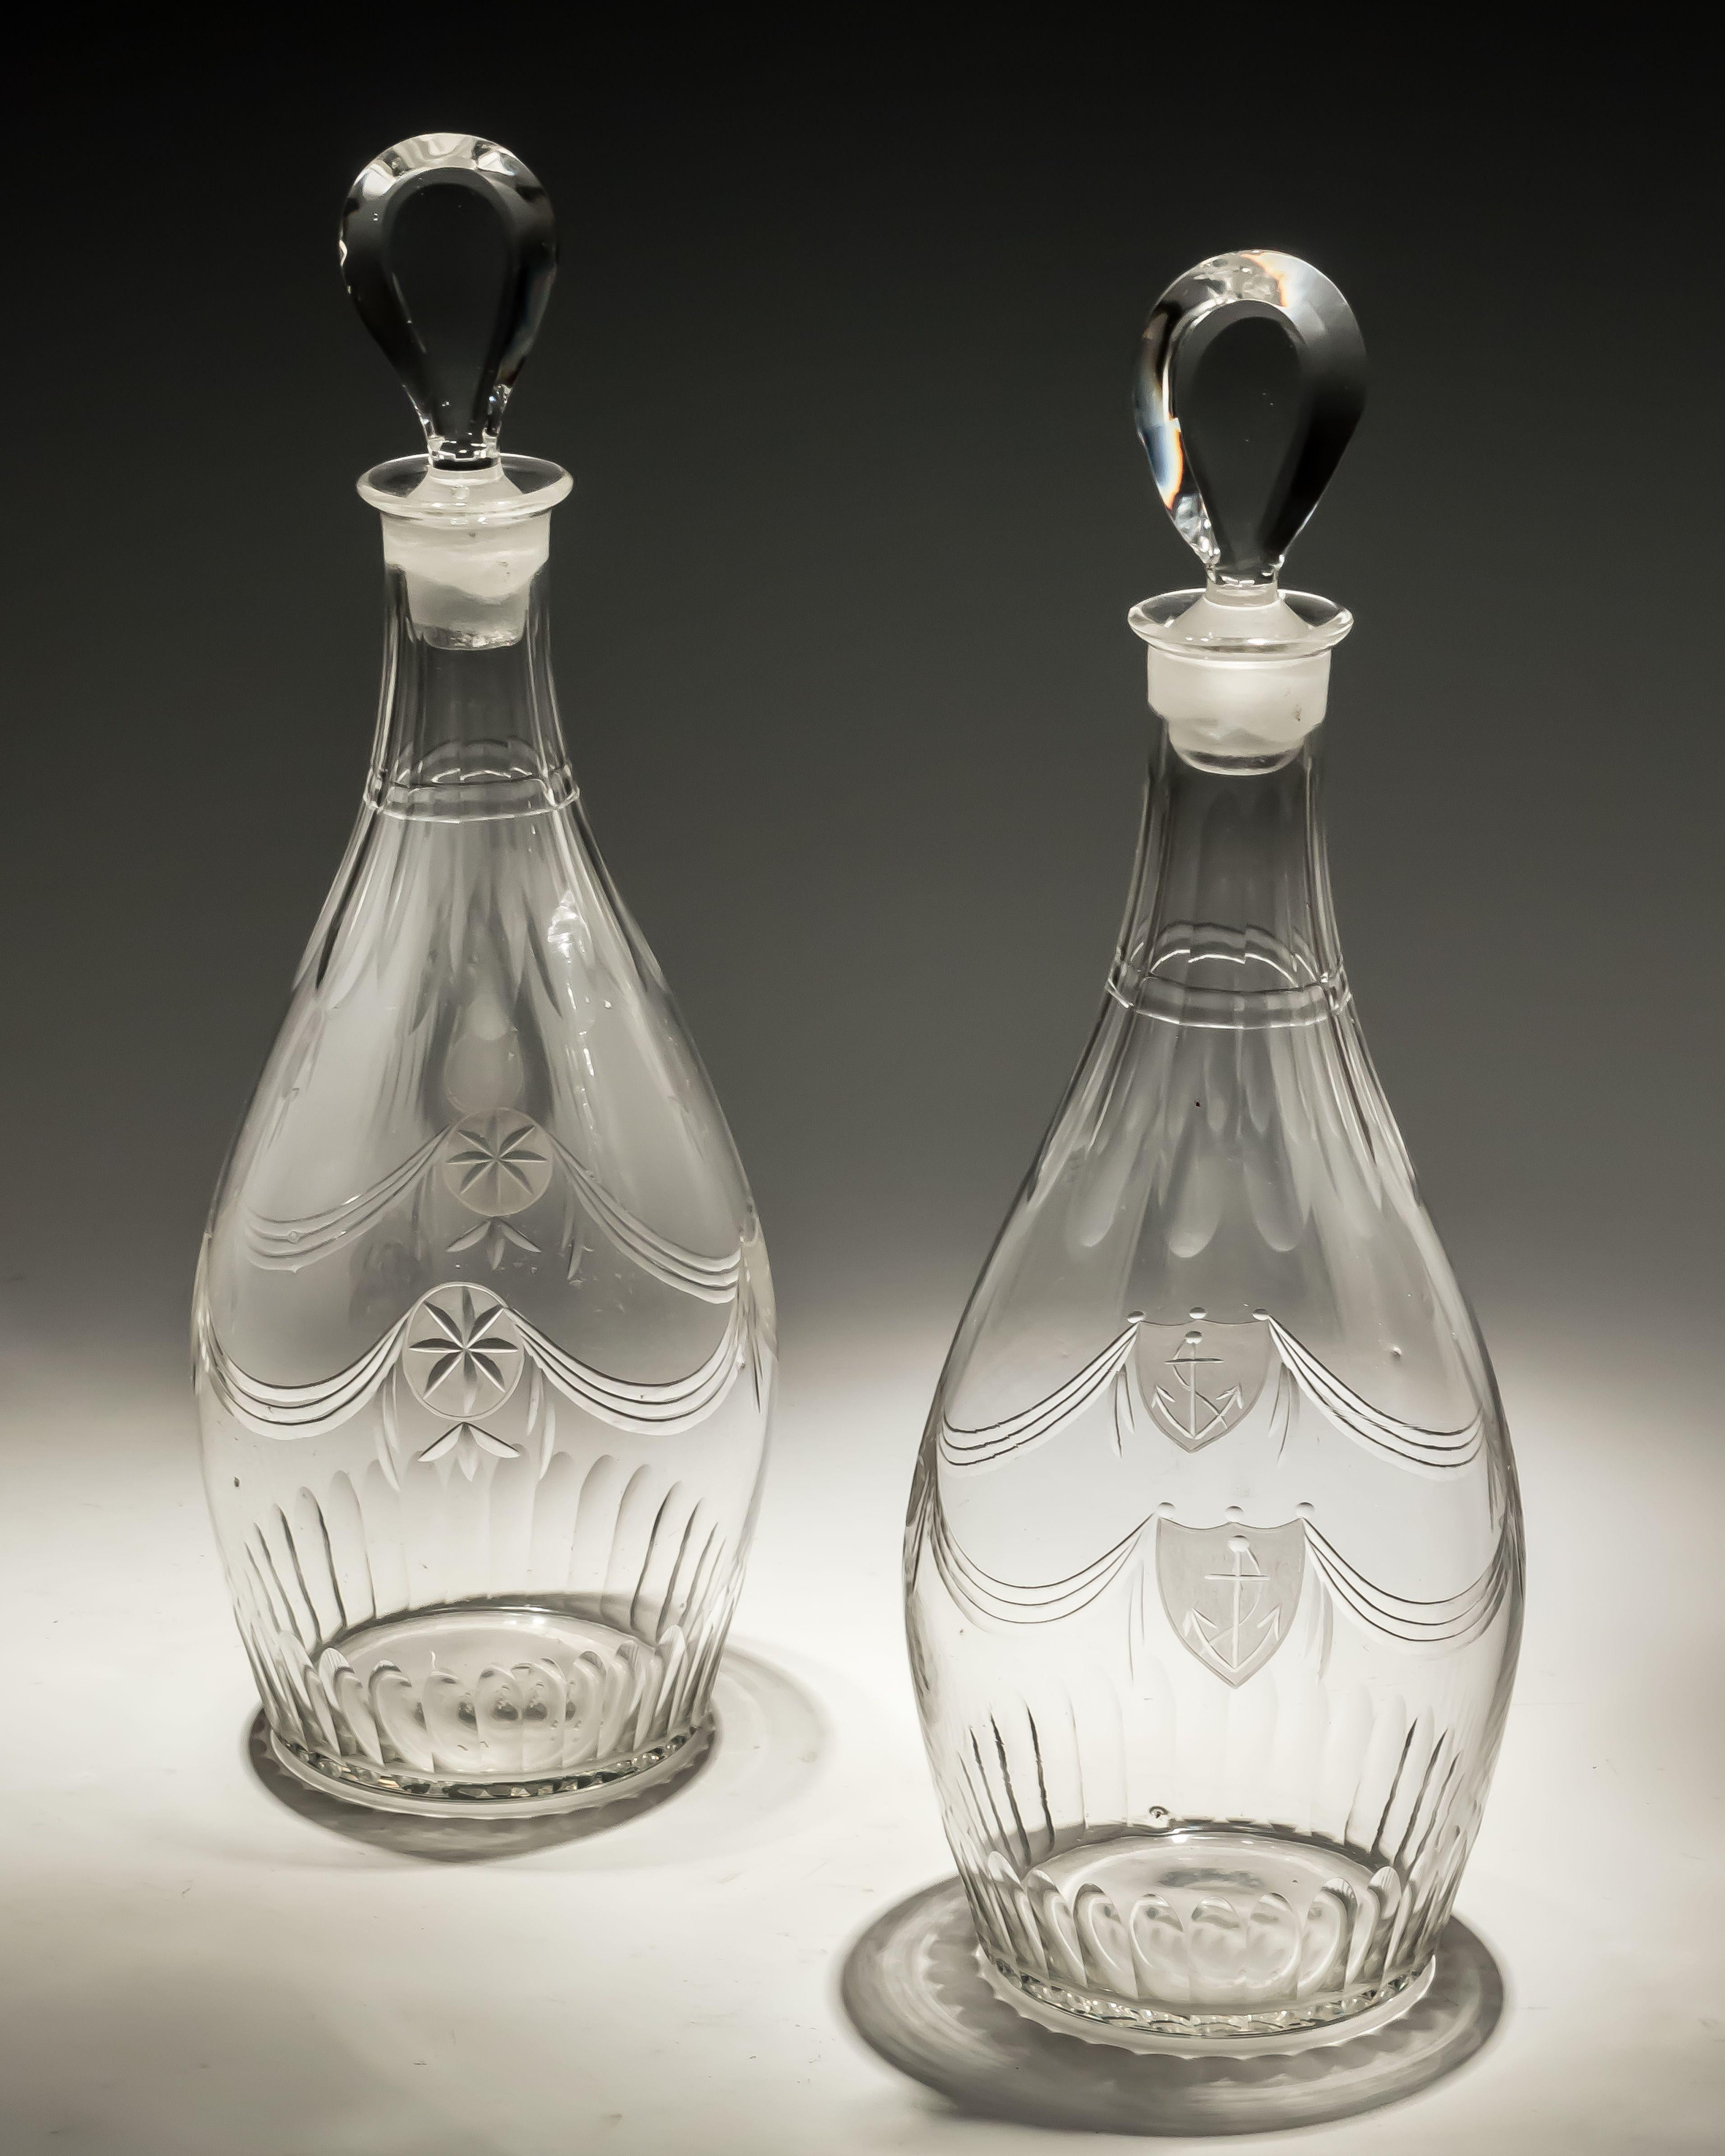 Eine Reihe von geschliffenen Gläsern aus dem späten 18. Jahrhundert der Adam-Periode, bestehend aus zwei keulenförmigen Dekantern mit tropfenförmigen Verschlüssen und fünf Gläsern mit konischem Stiel, alle fein graviert mit Säumen, mattierten